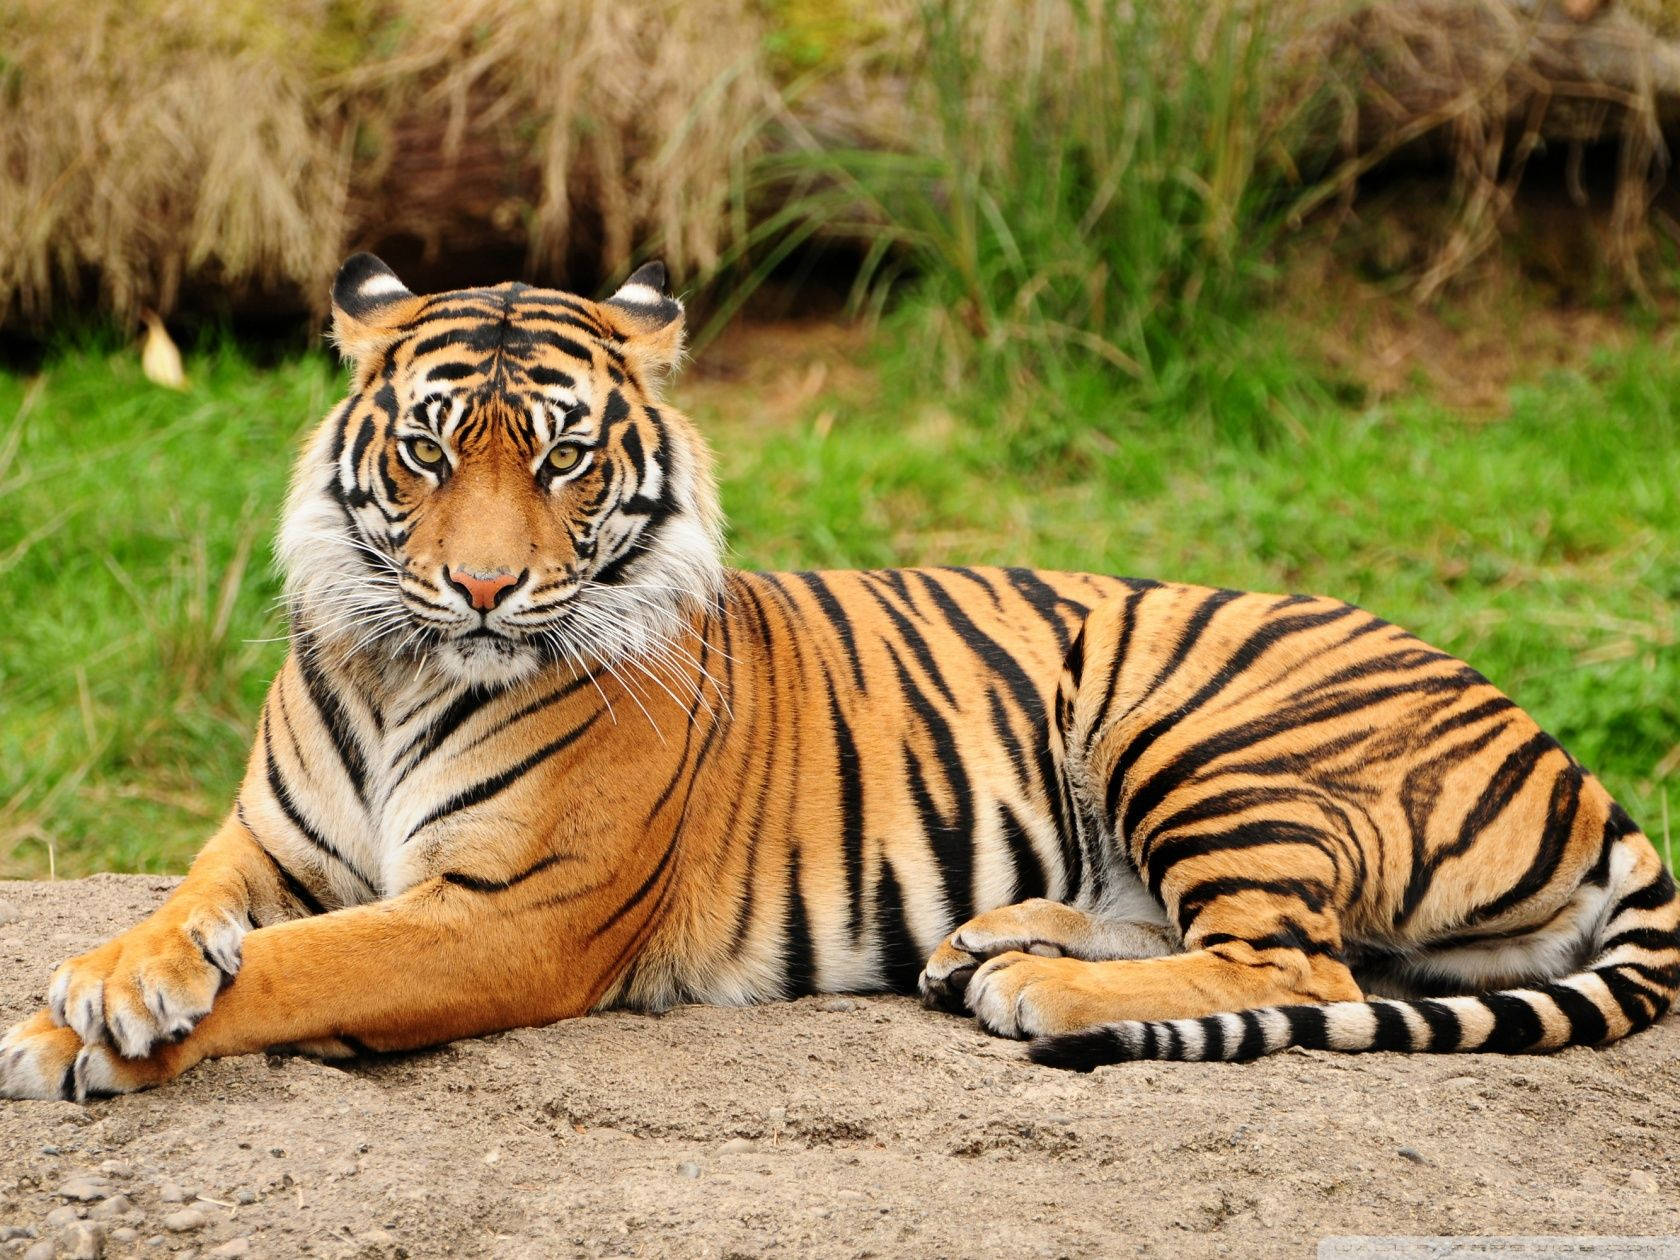 Sitting Tiger Full Body